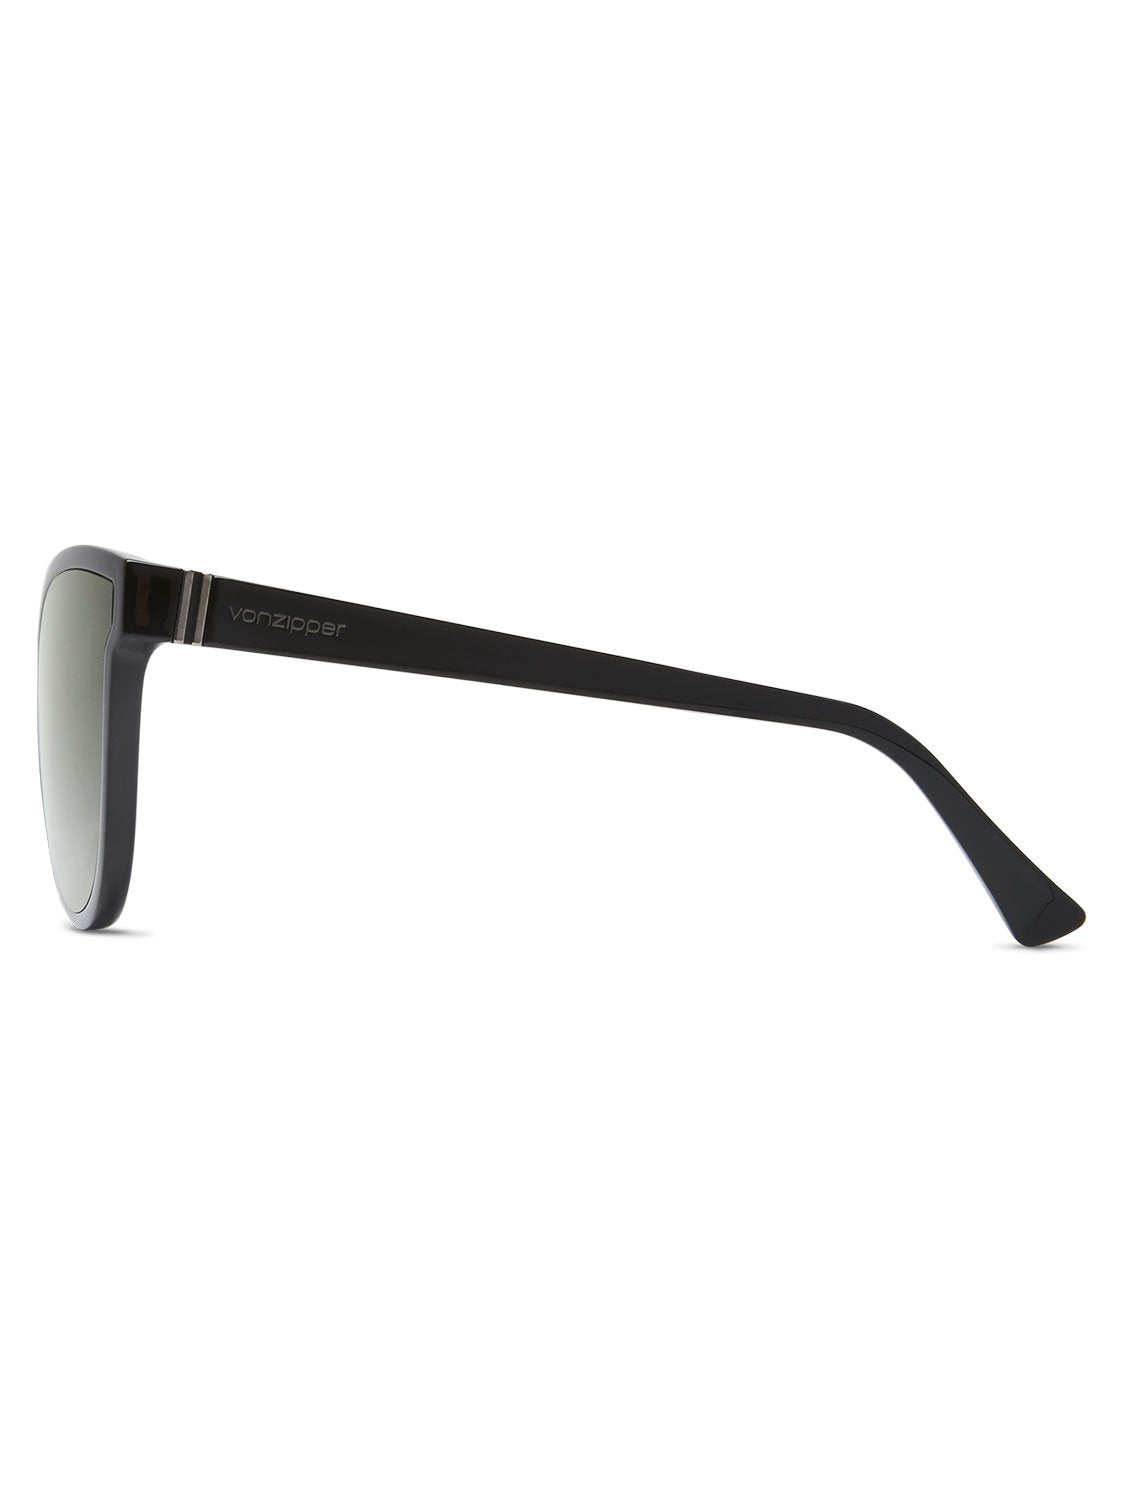 VonZipper Unisex Fairchild Sunglasses